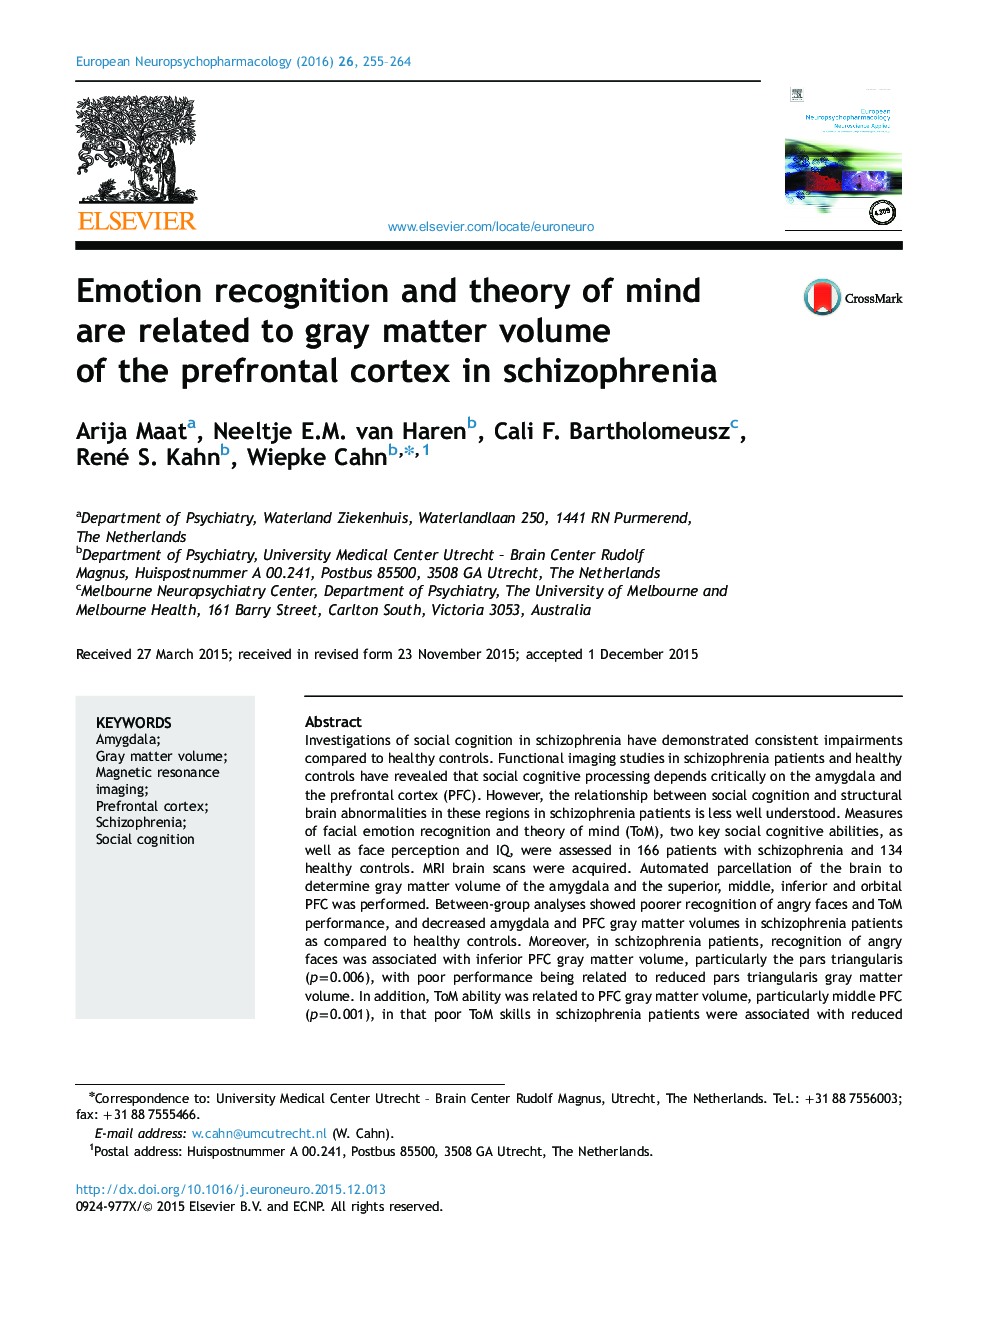 تشخیص احساسات و تئوری ذهن با حجم ماده خاکستری قشر جلوی مغز در اسکیزوفرنی مرتبط است